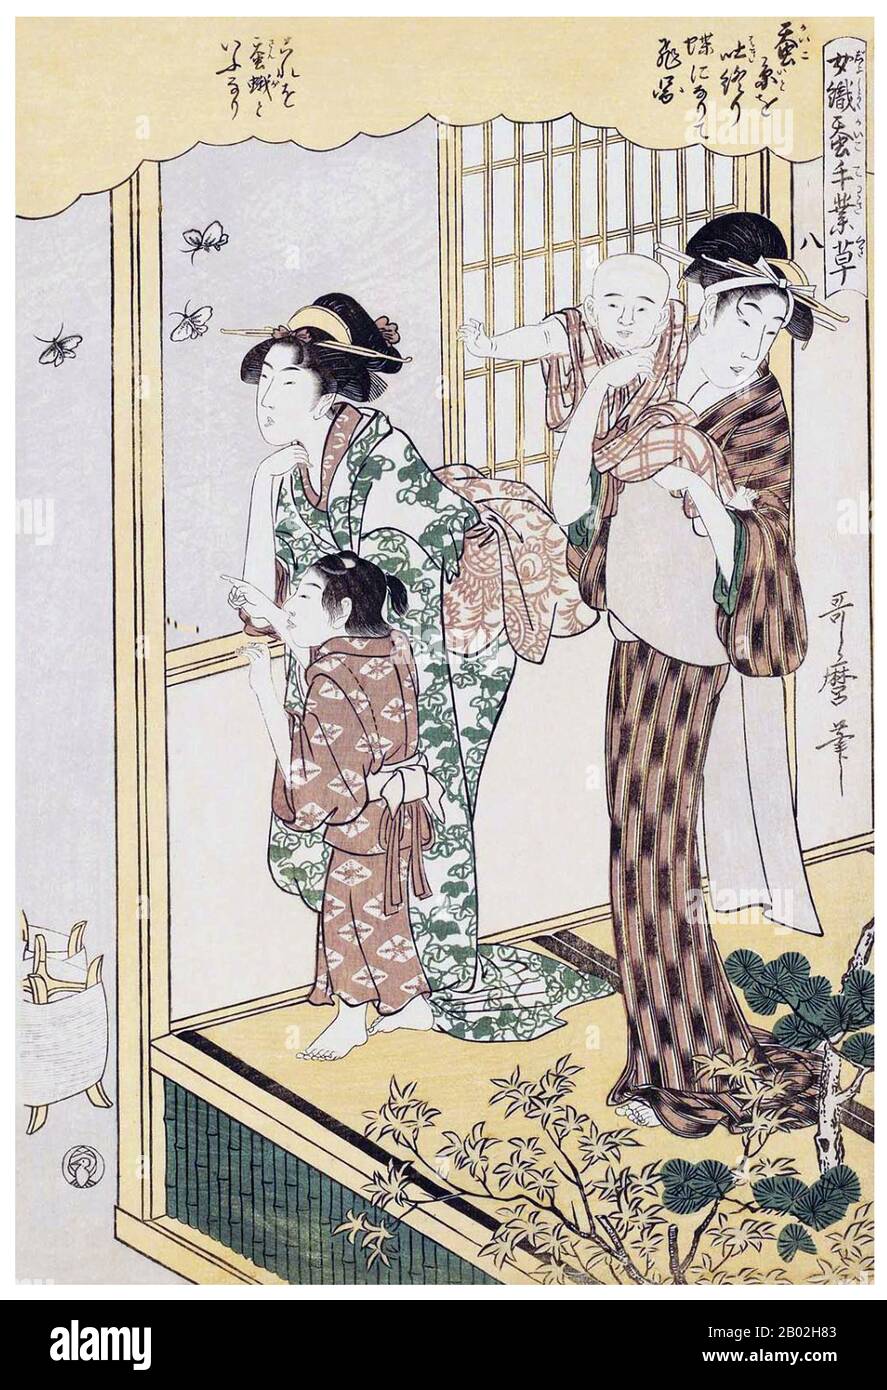 8. "Regarder des papillons", représentant deux femmes et leurs enfants regardant des papillons aériens le soir. Kitagawa Utamaro (env. 1753 - 31 octobre 1806) était un peintre et graveur japonais, considéré comme l'un des plus grands artistes de gravures de bois (ukiyo-e). Il est surtout connu pour ses études magistralement composées de femmes, connues sous le nom de bijinga. Il a également produit des études sur la nature, notamment des livres illustrés d'insectes. Banque D'Images